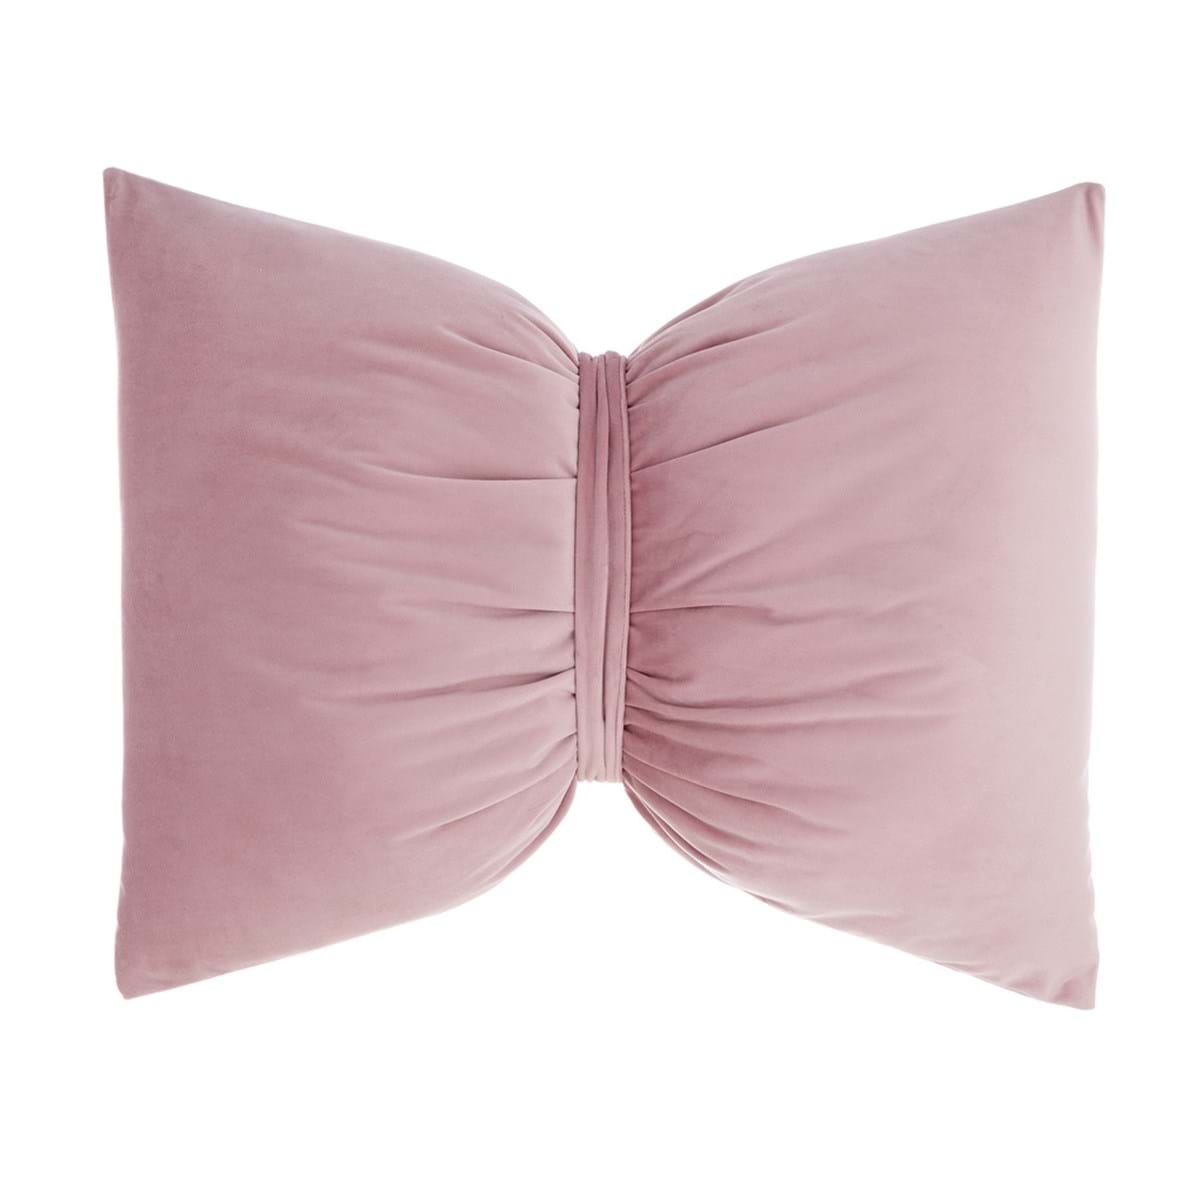 Cuscino fiocco in velluto rosa - 45x60 - Collezione 2022 - Blanc Mariclò